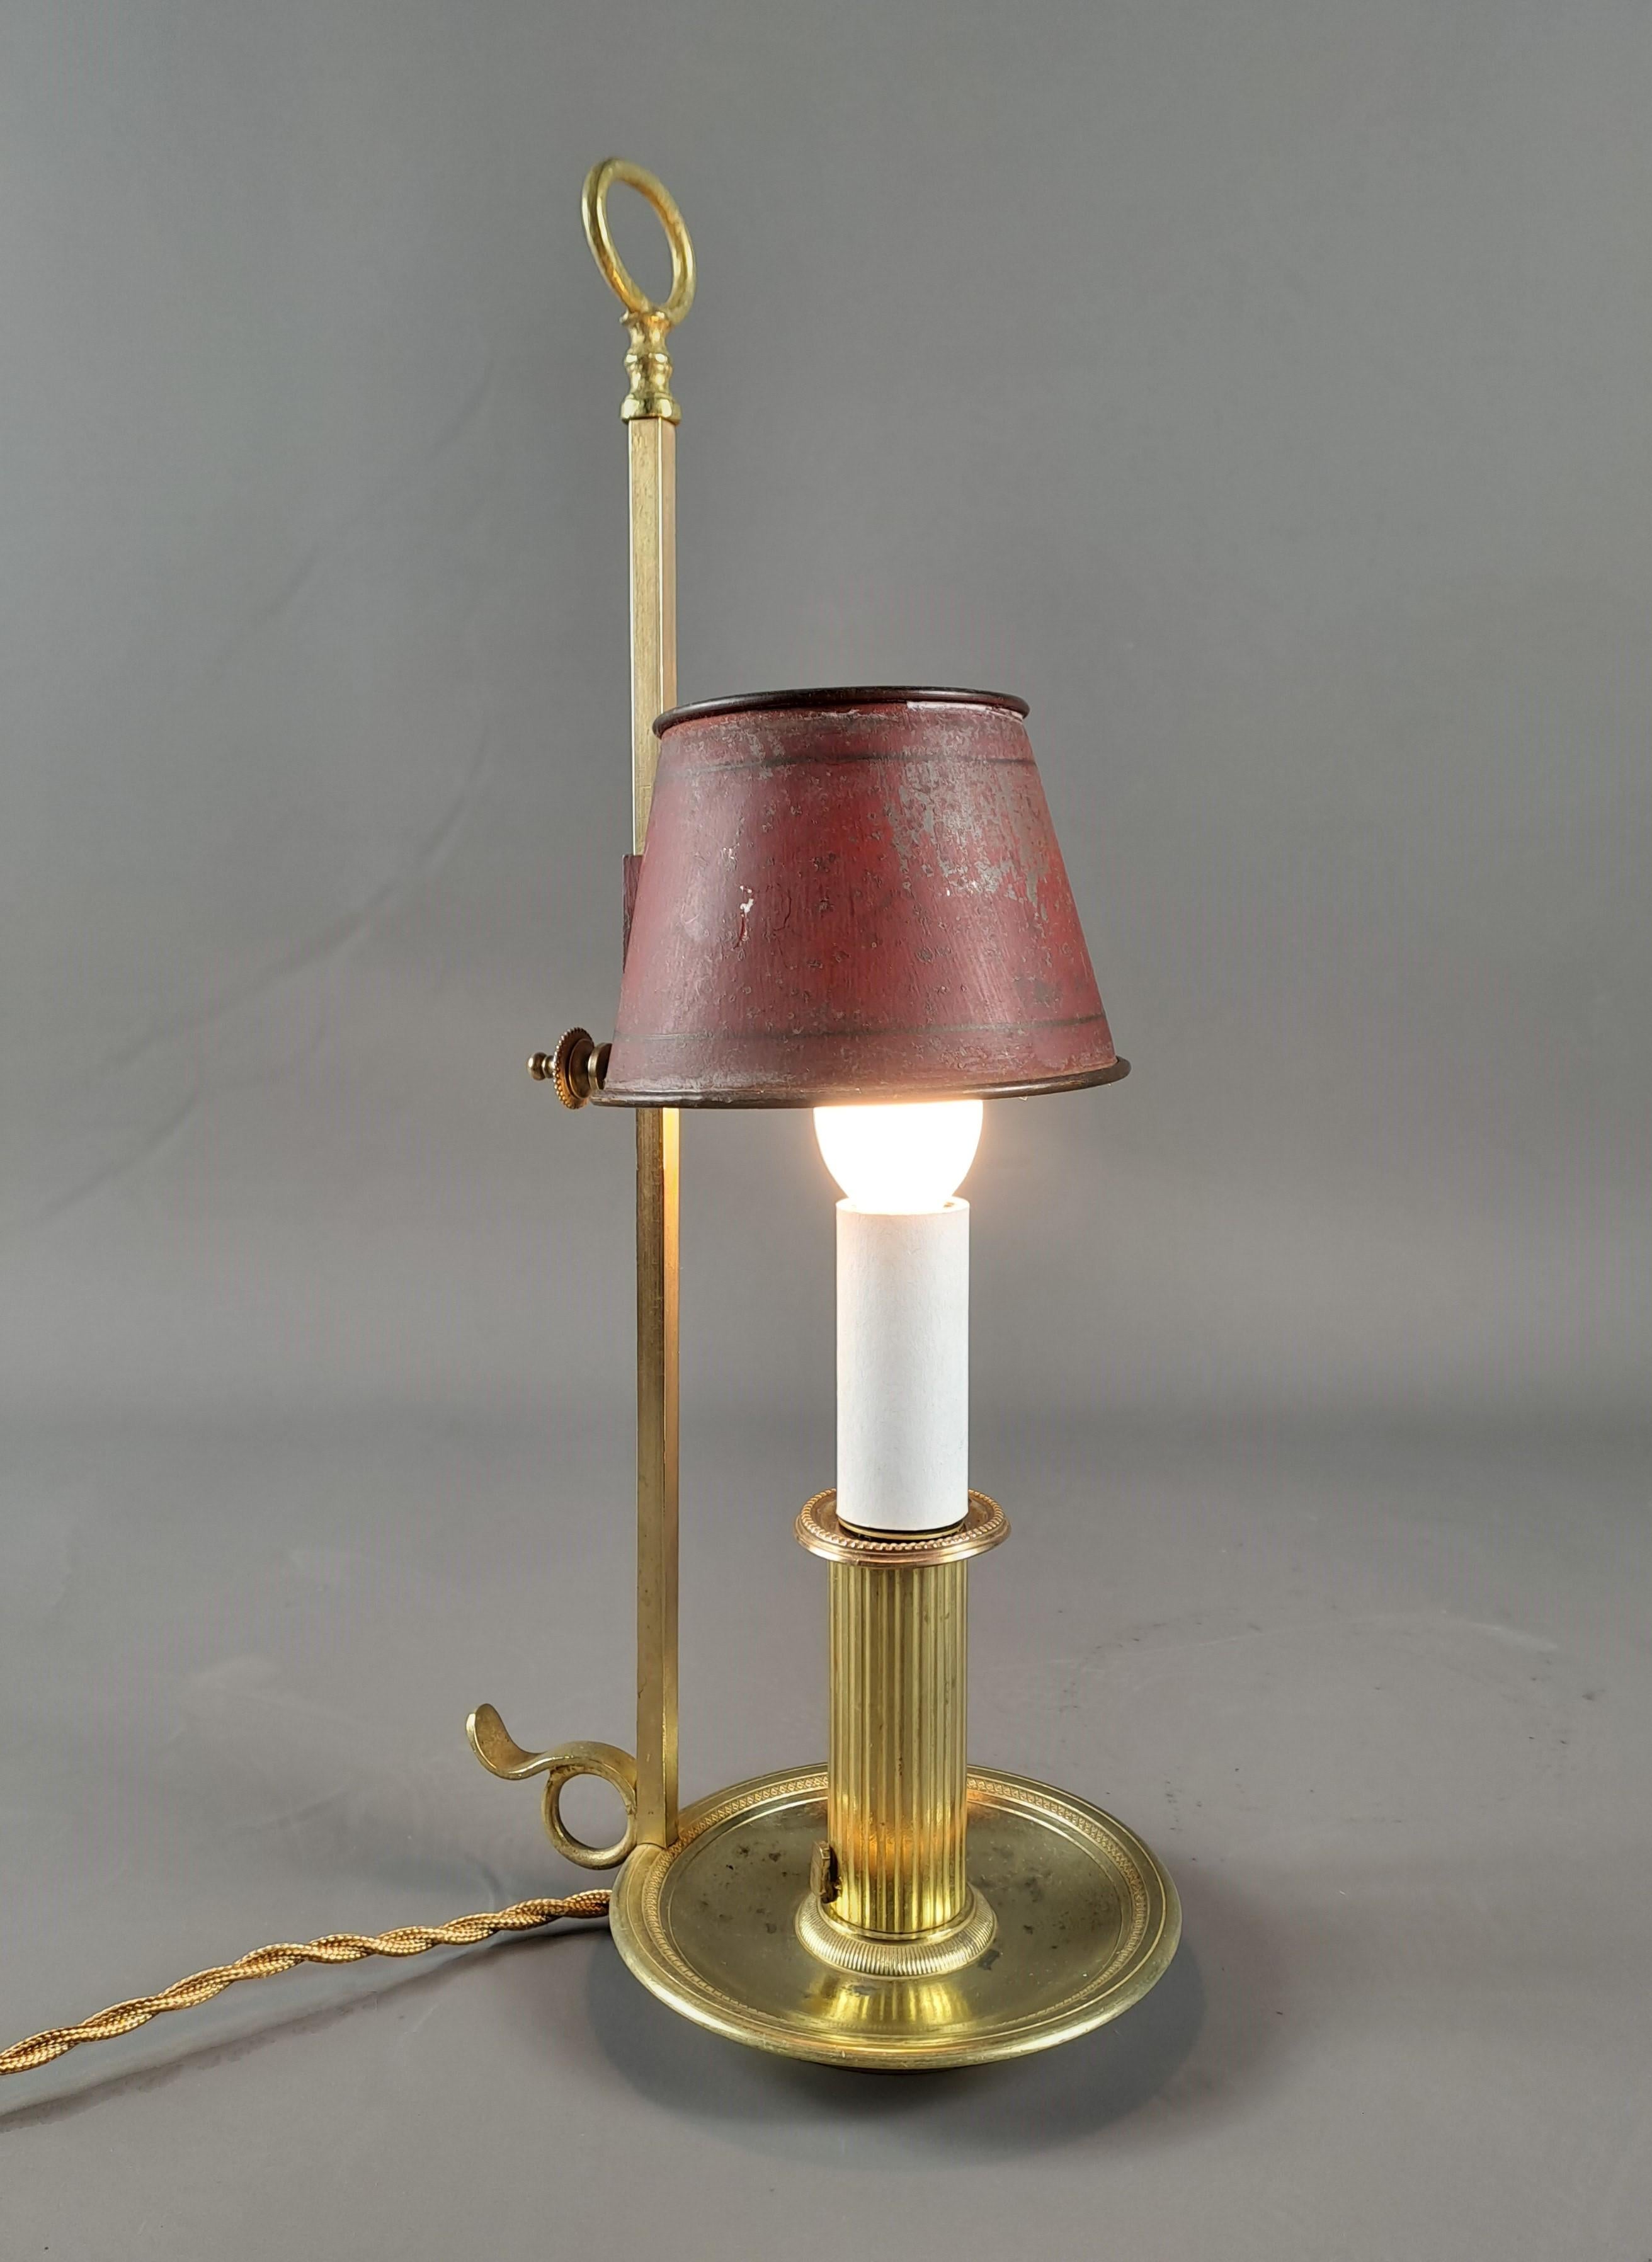 Charmante petite lampe bouillotte en bronze doré et ciselé, avec un bras de lumière et un abat-jour en tôle laquée rouge.

Ouvrage ancien du début du 19e siècle, époque empire

Bon état, électrifié par notre atelier